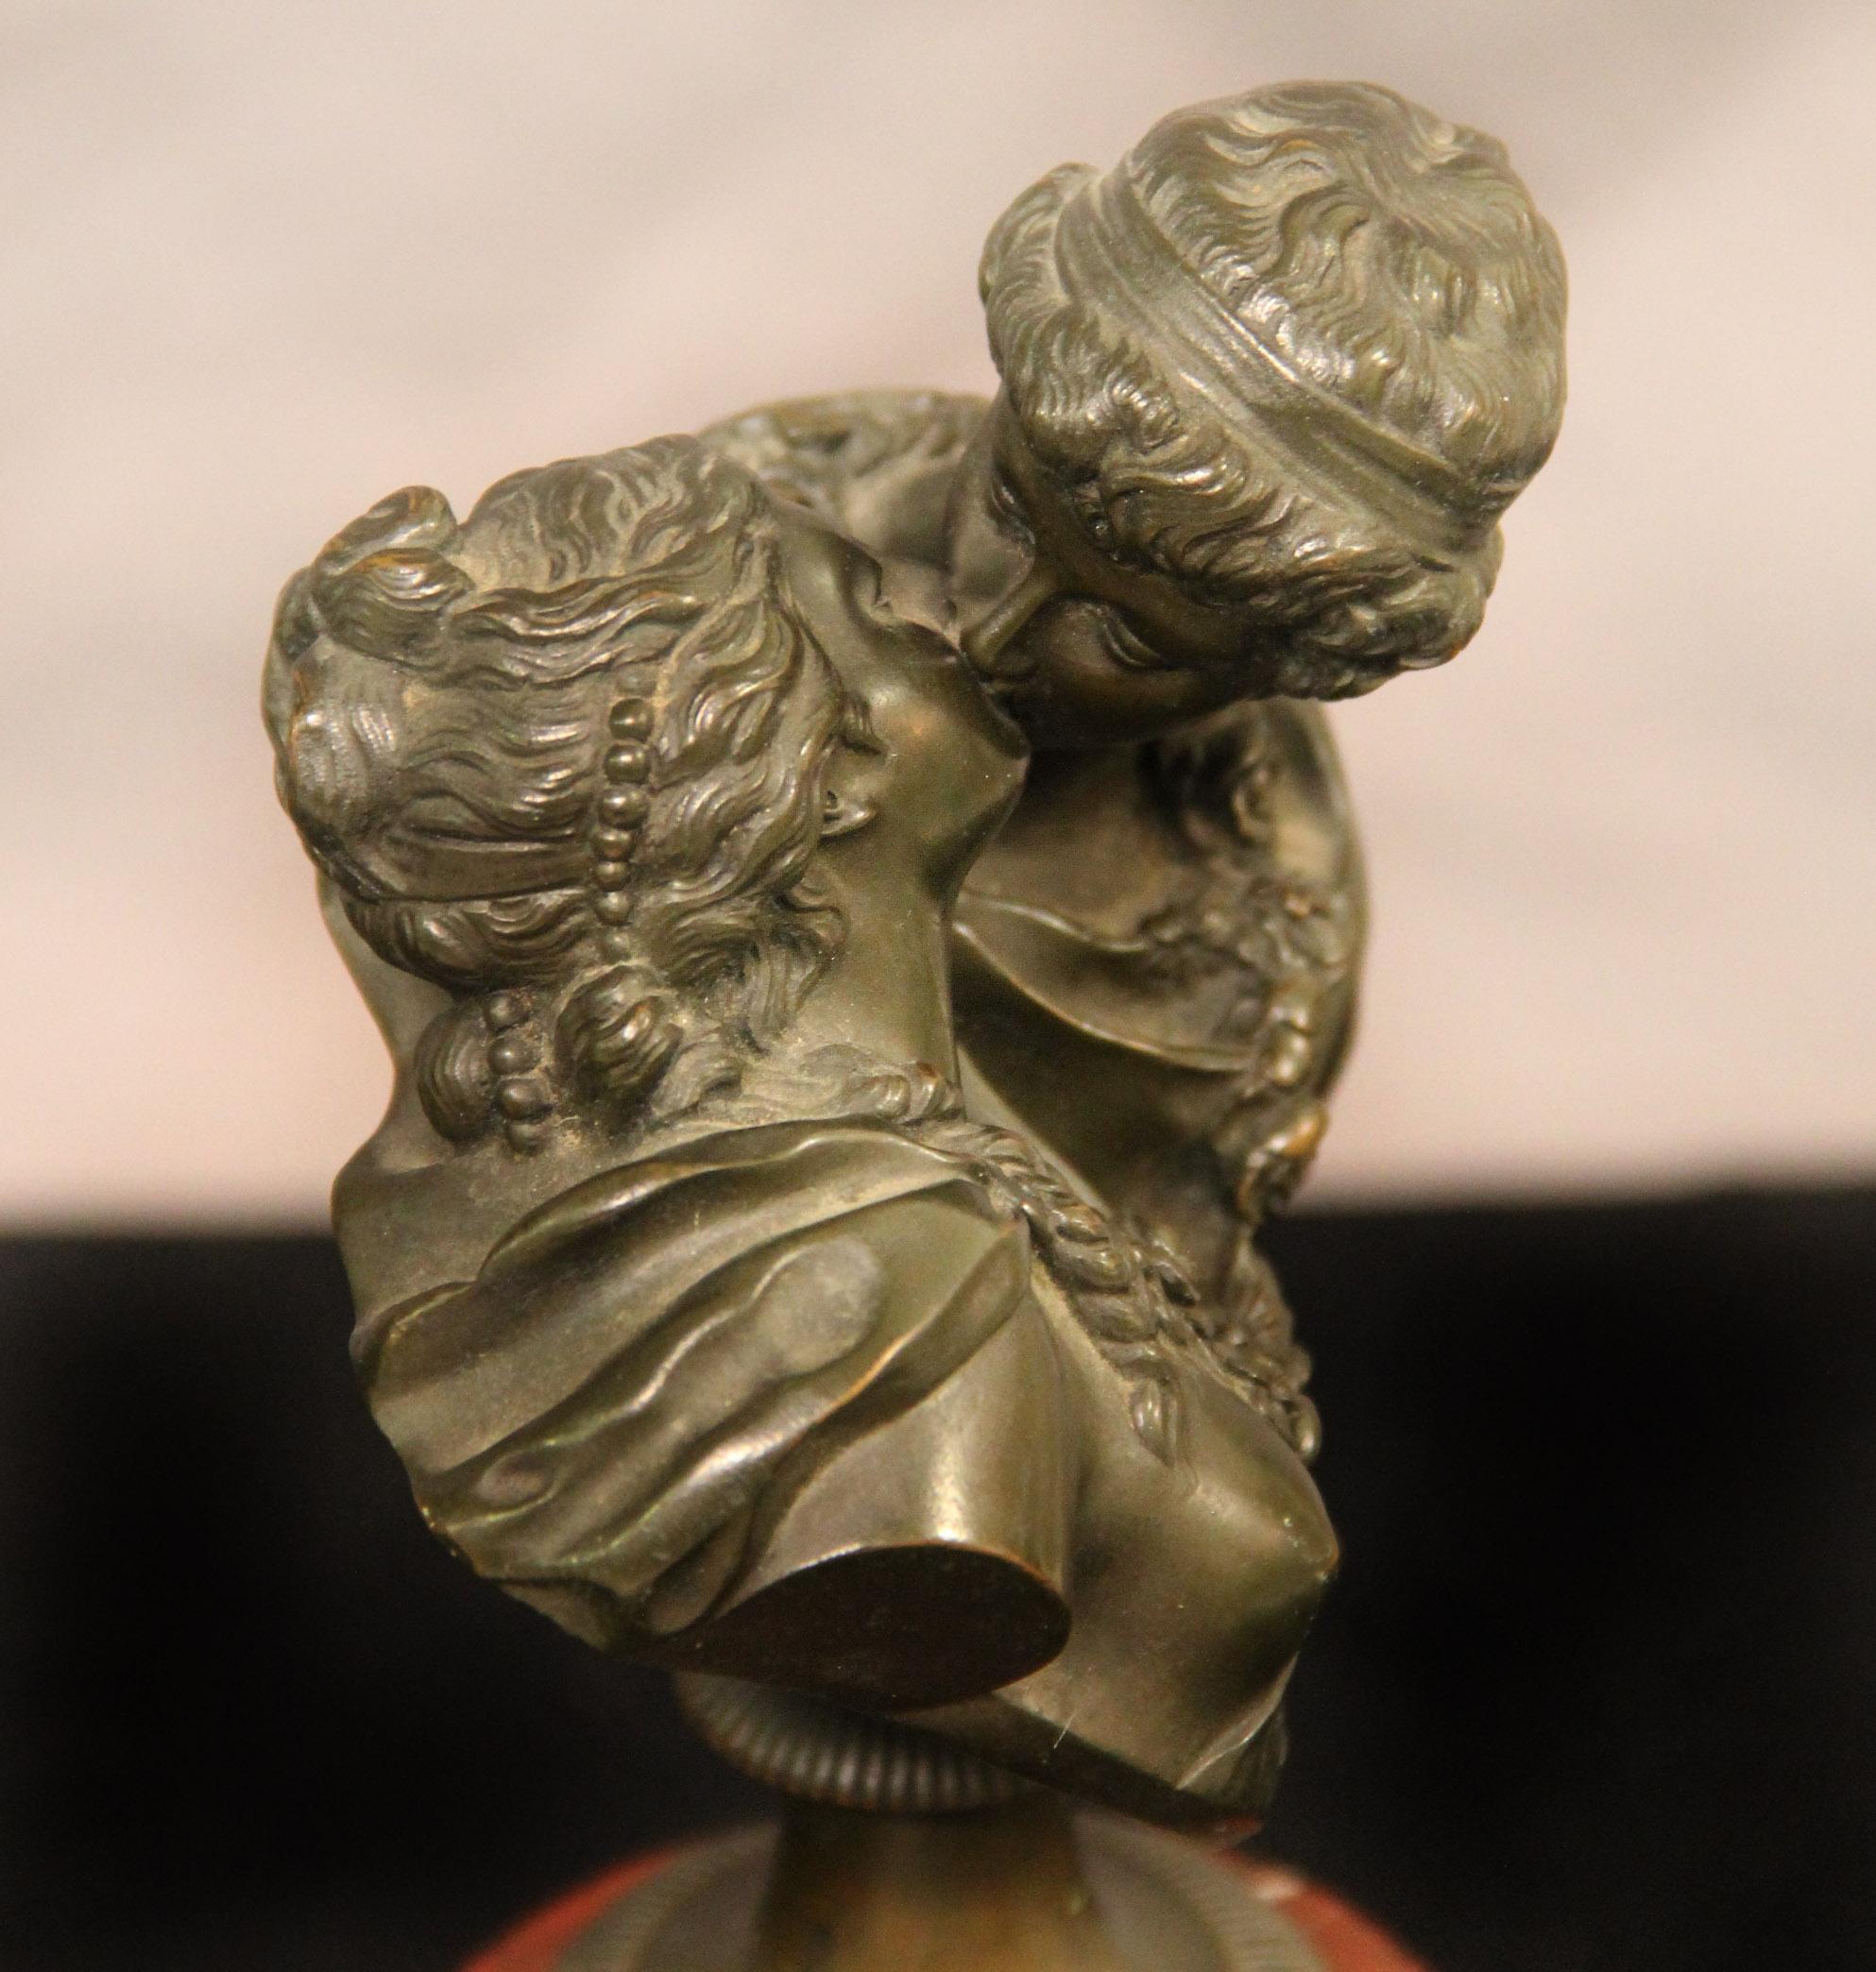 Belle Époque Fine 19th Century Bronze Bust Entitled “Le Baiser” by Jean- Antoine Houdon